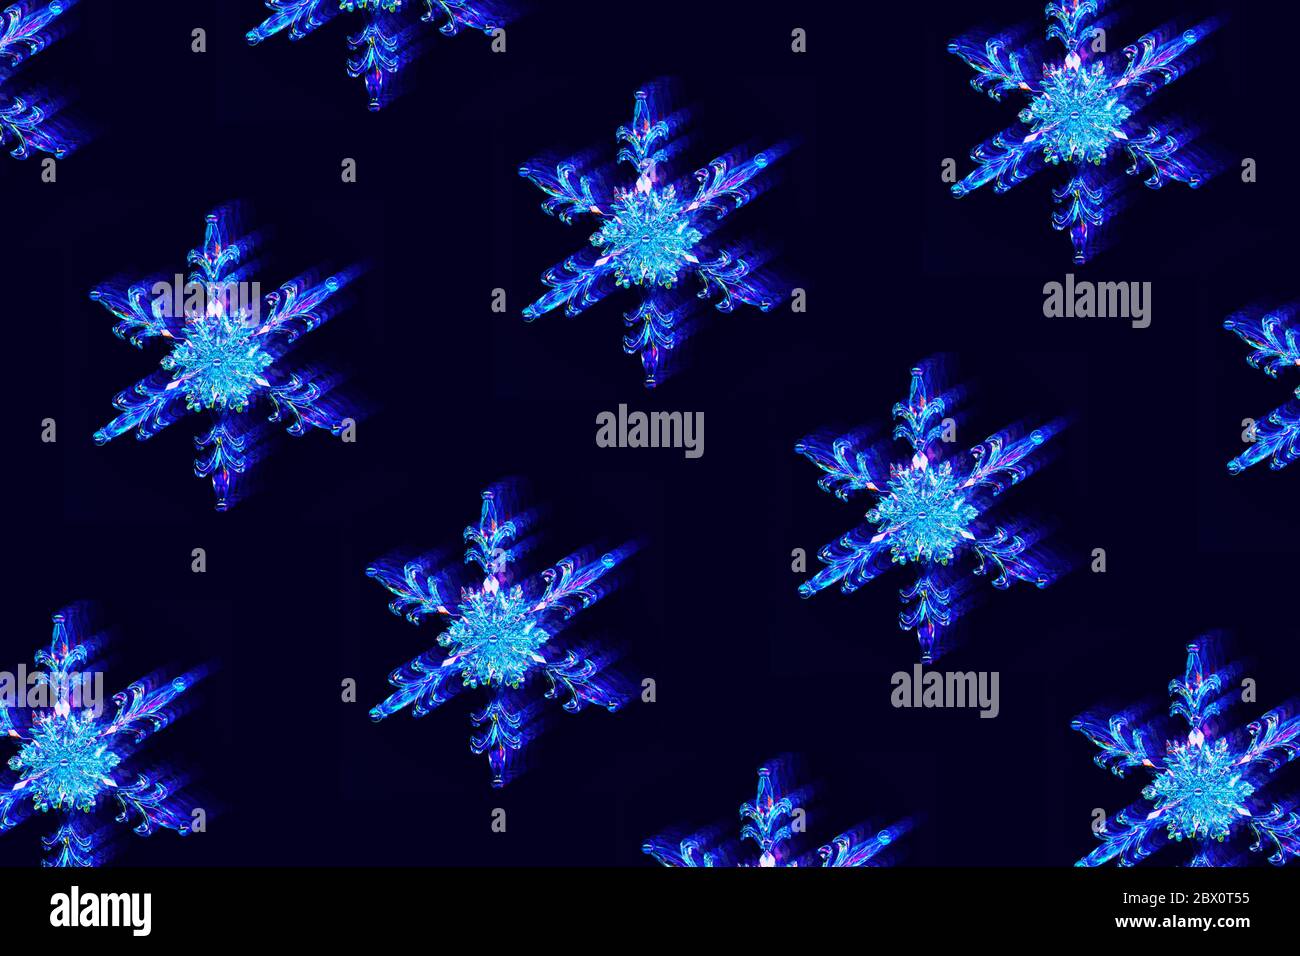 Muster mit verflochteten Schneeflocken mit digitalem Glitch- und Verzerrungseffekt auf dunkelblauem Hintergrund. Futuristisches Cyberpunk-Design. Retro Futurismus, Web Stockfoto